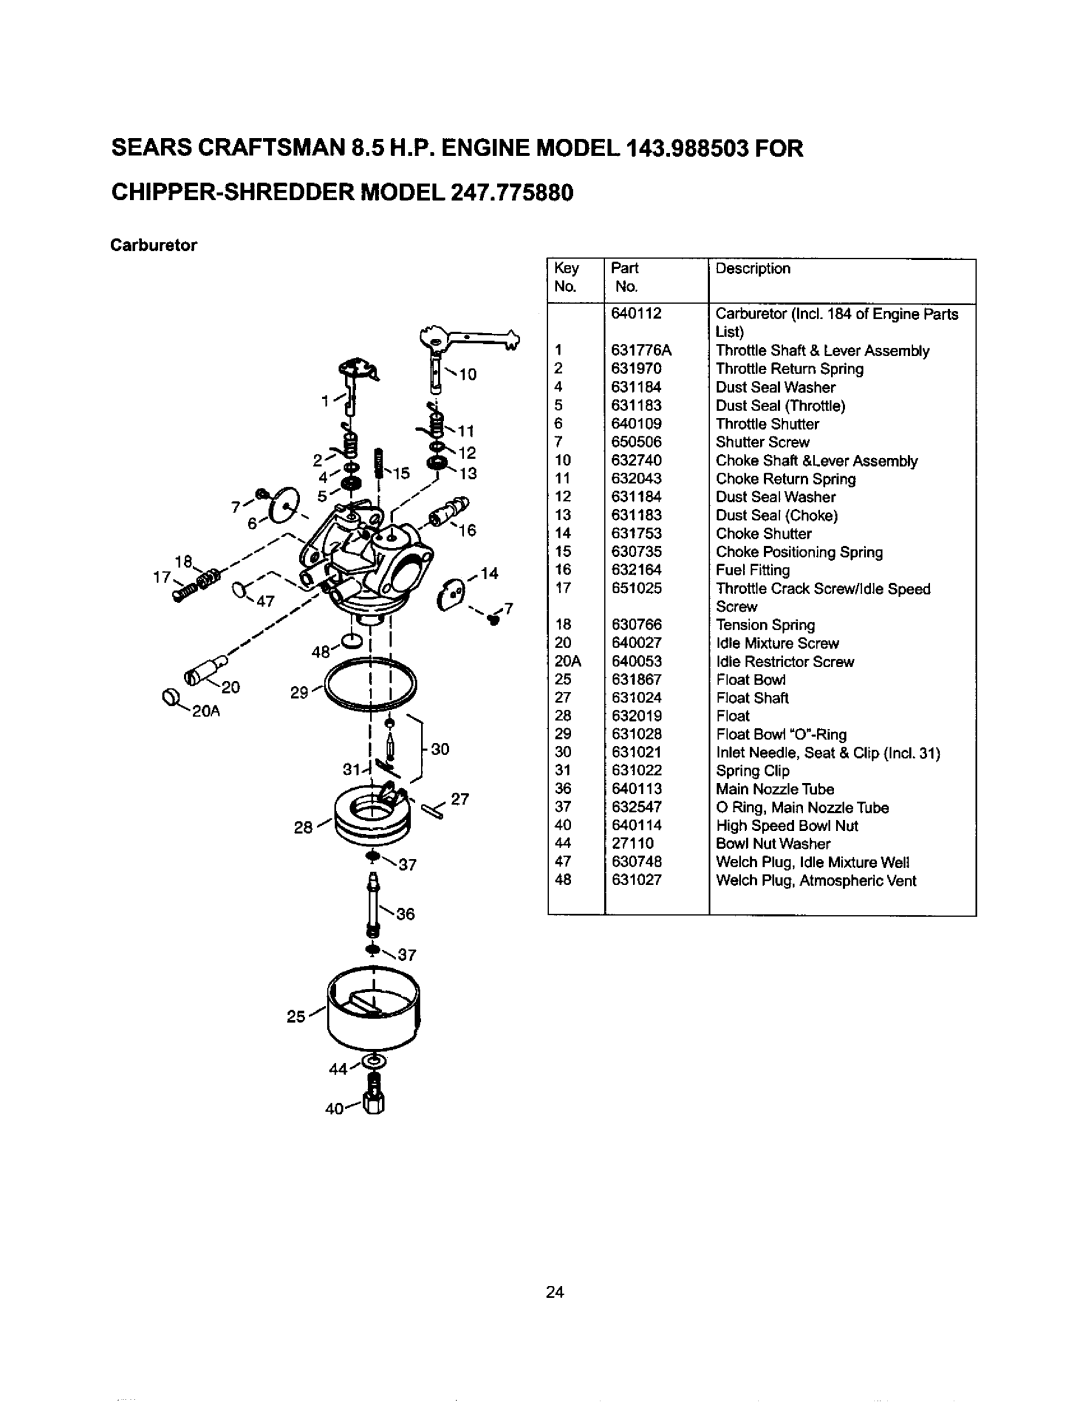 Craftsman 247.77588O owner manual Chipper-Shreddermodel, Carburetor 